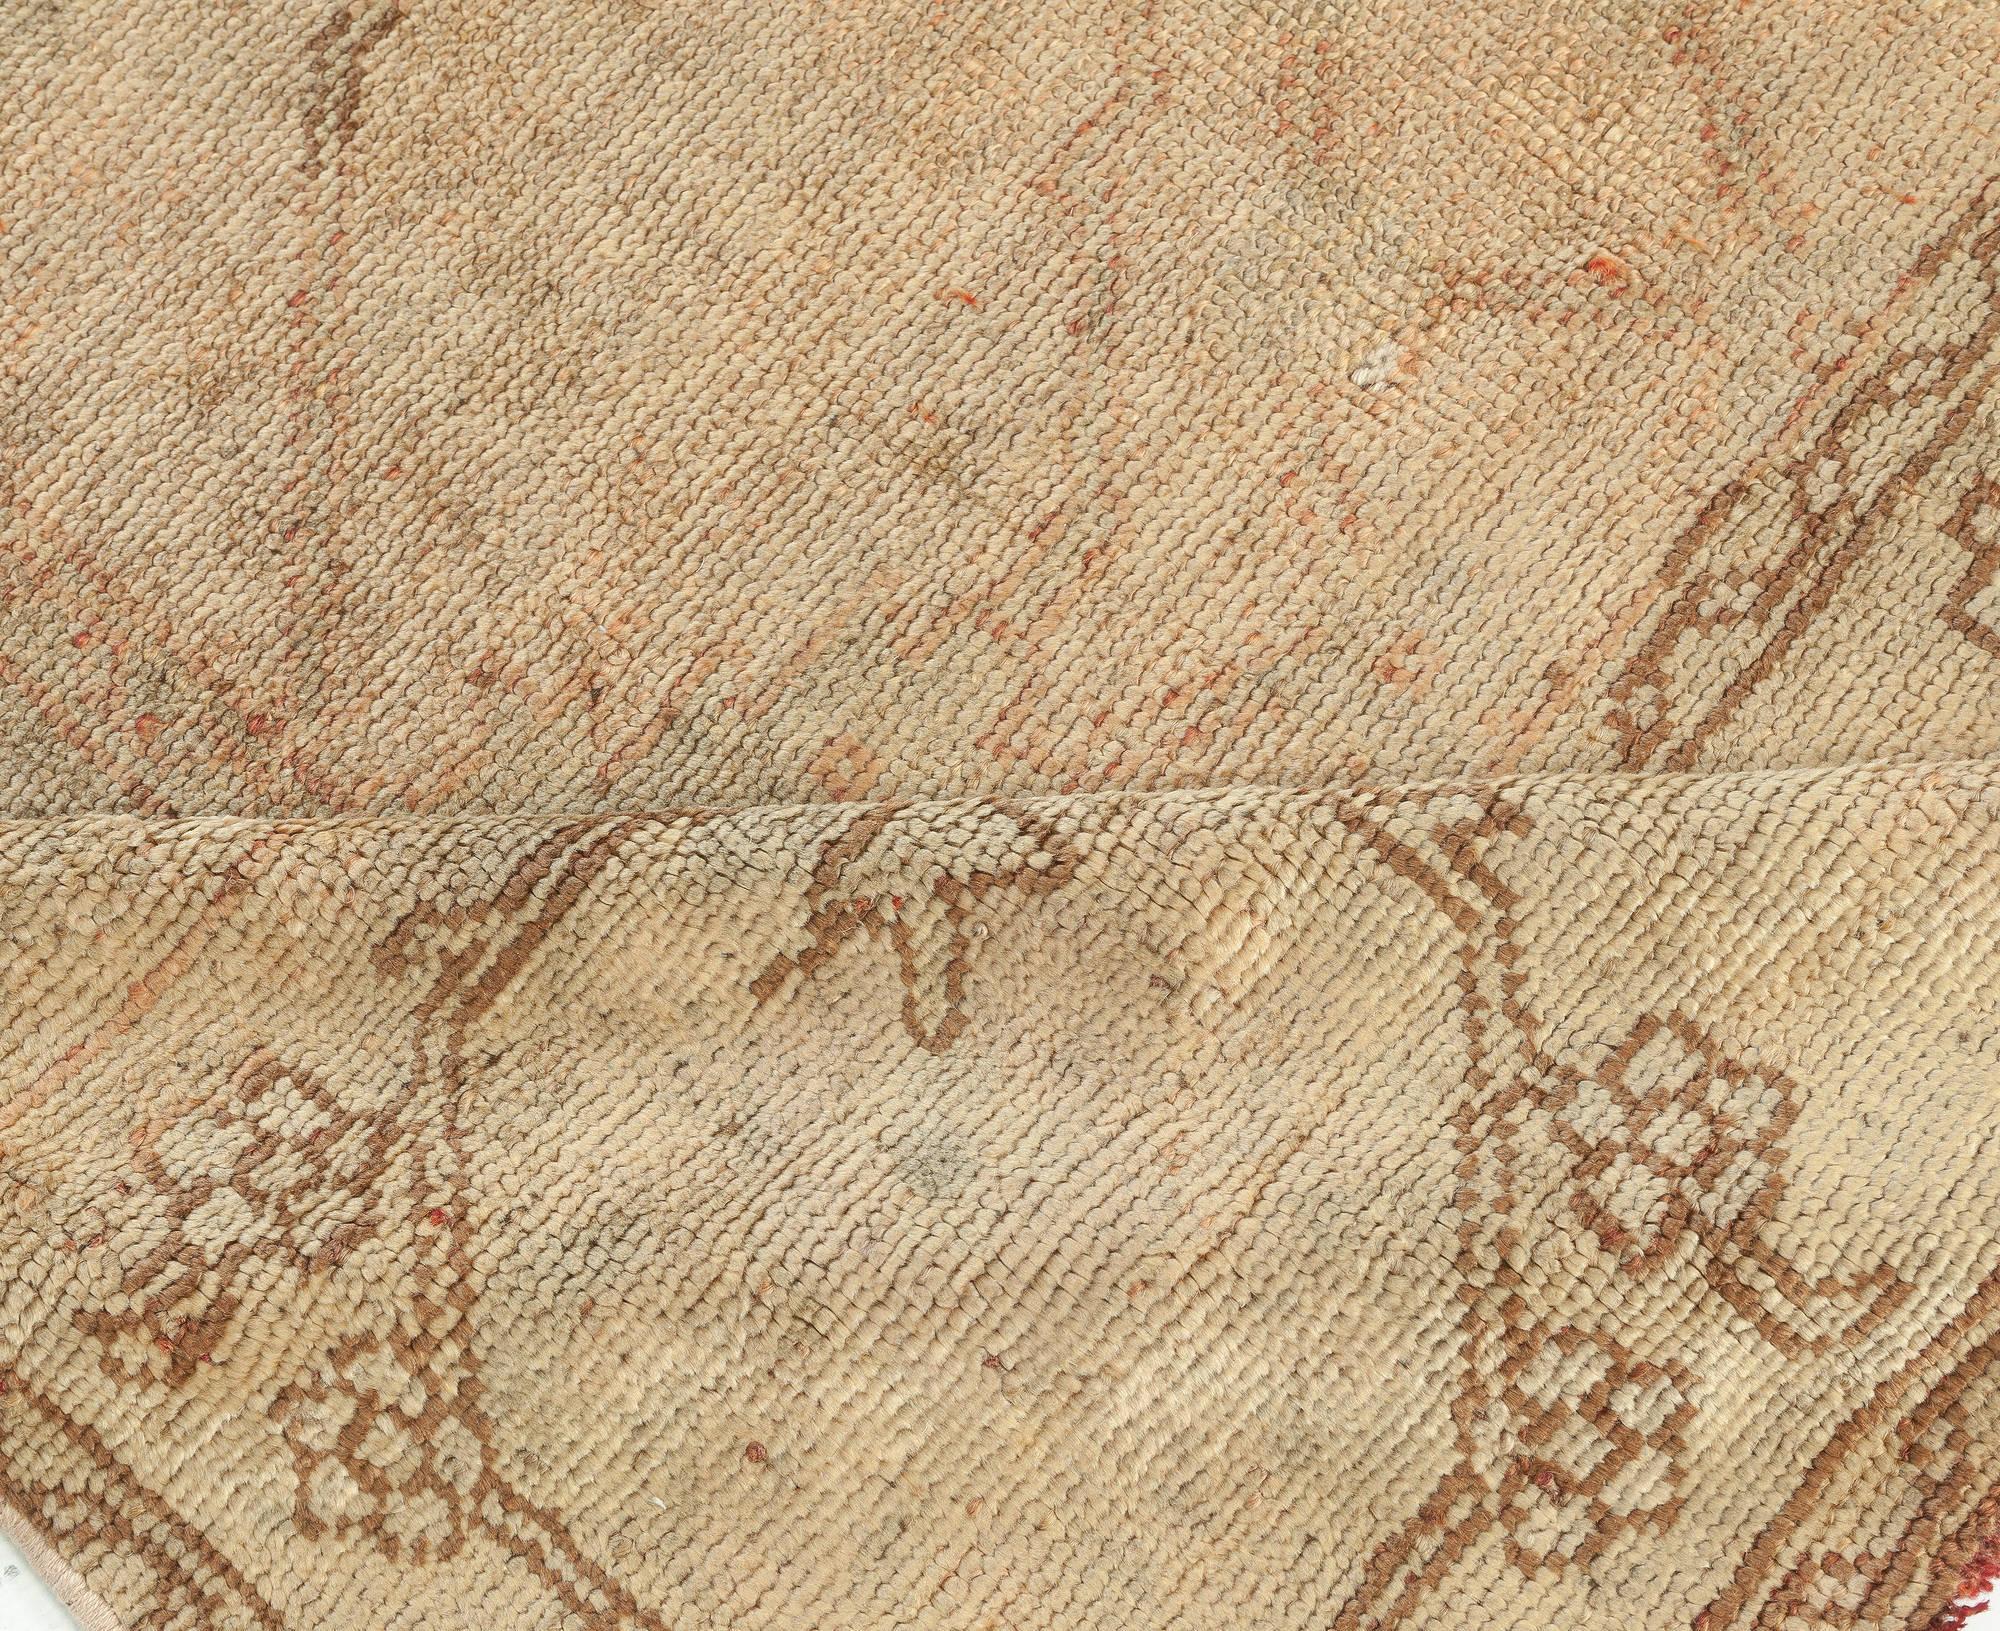 Antique Turkish Oushak Handmade Wool rug
Size: 12'0